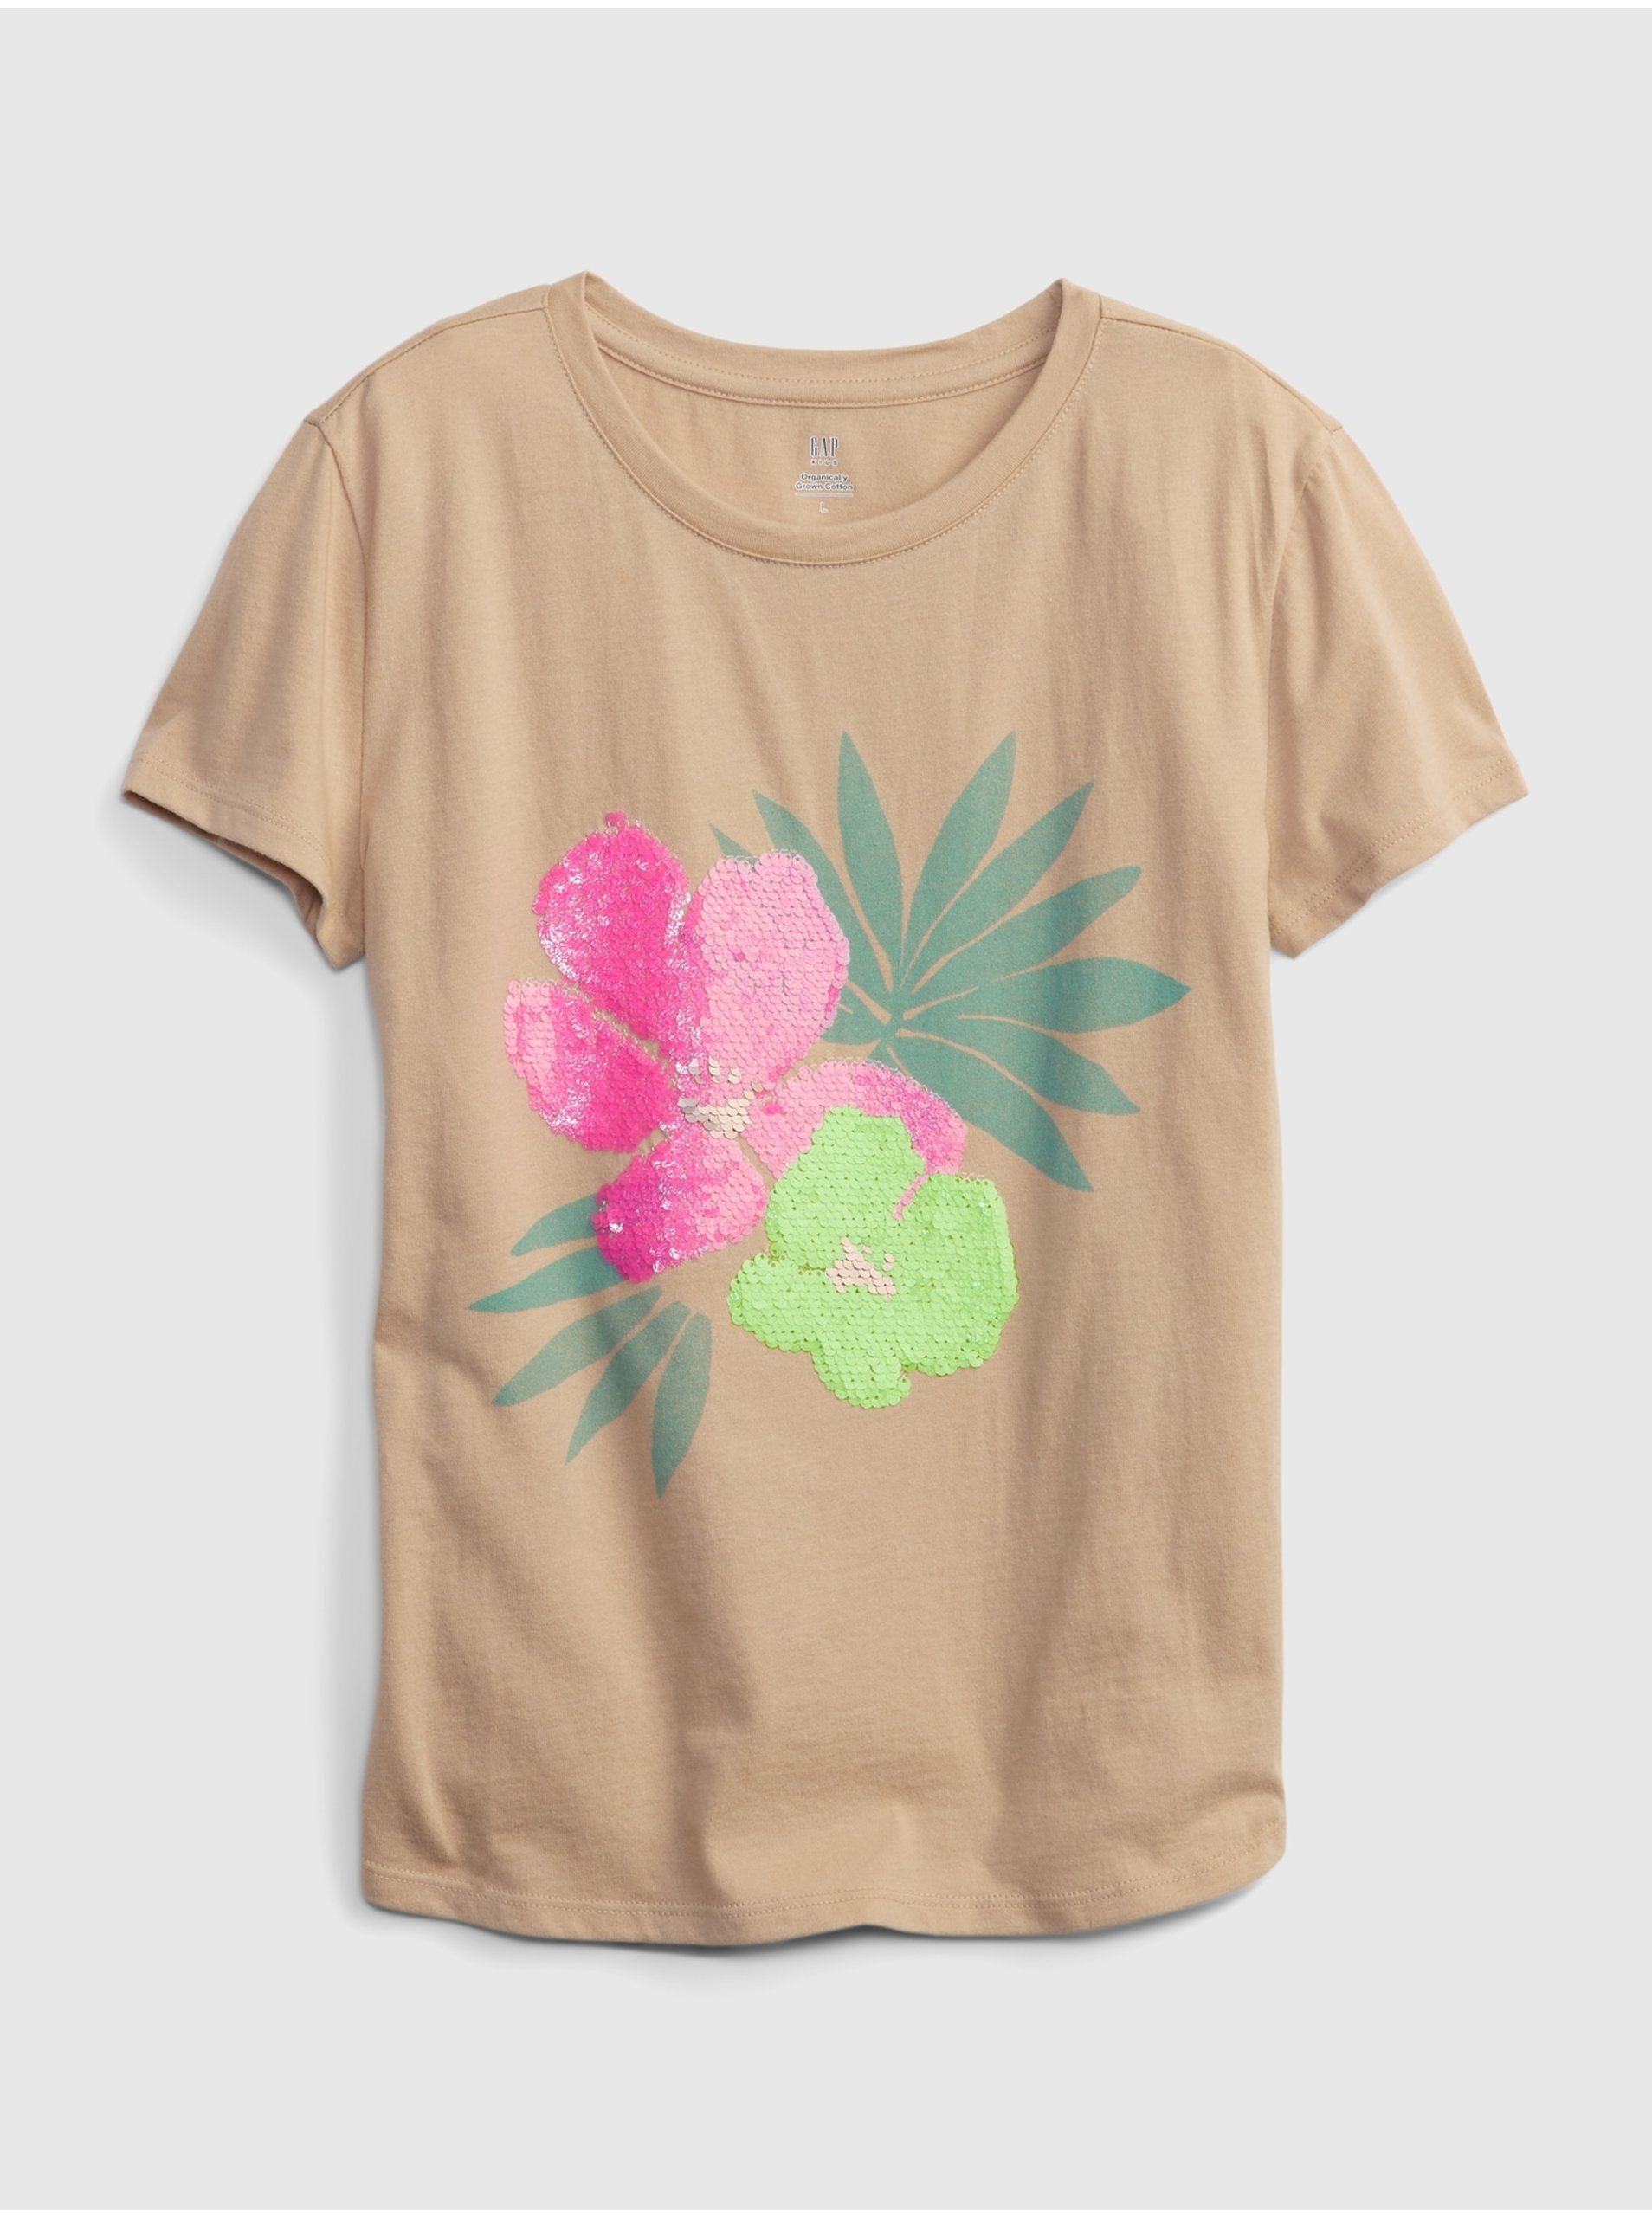 Lacno Béžové dievčenské tričko organic s flitrami floral GAP